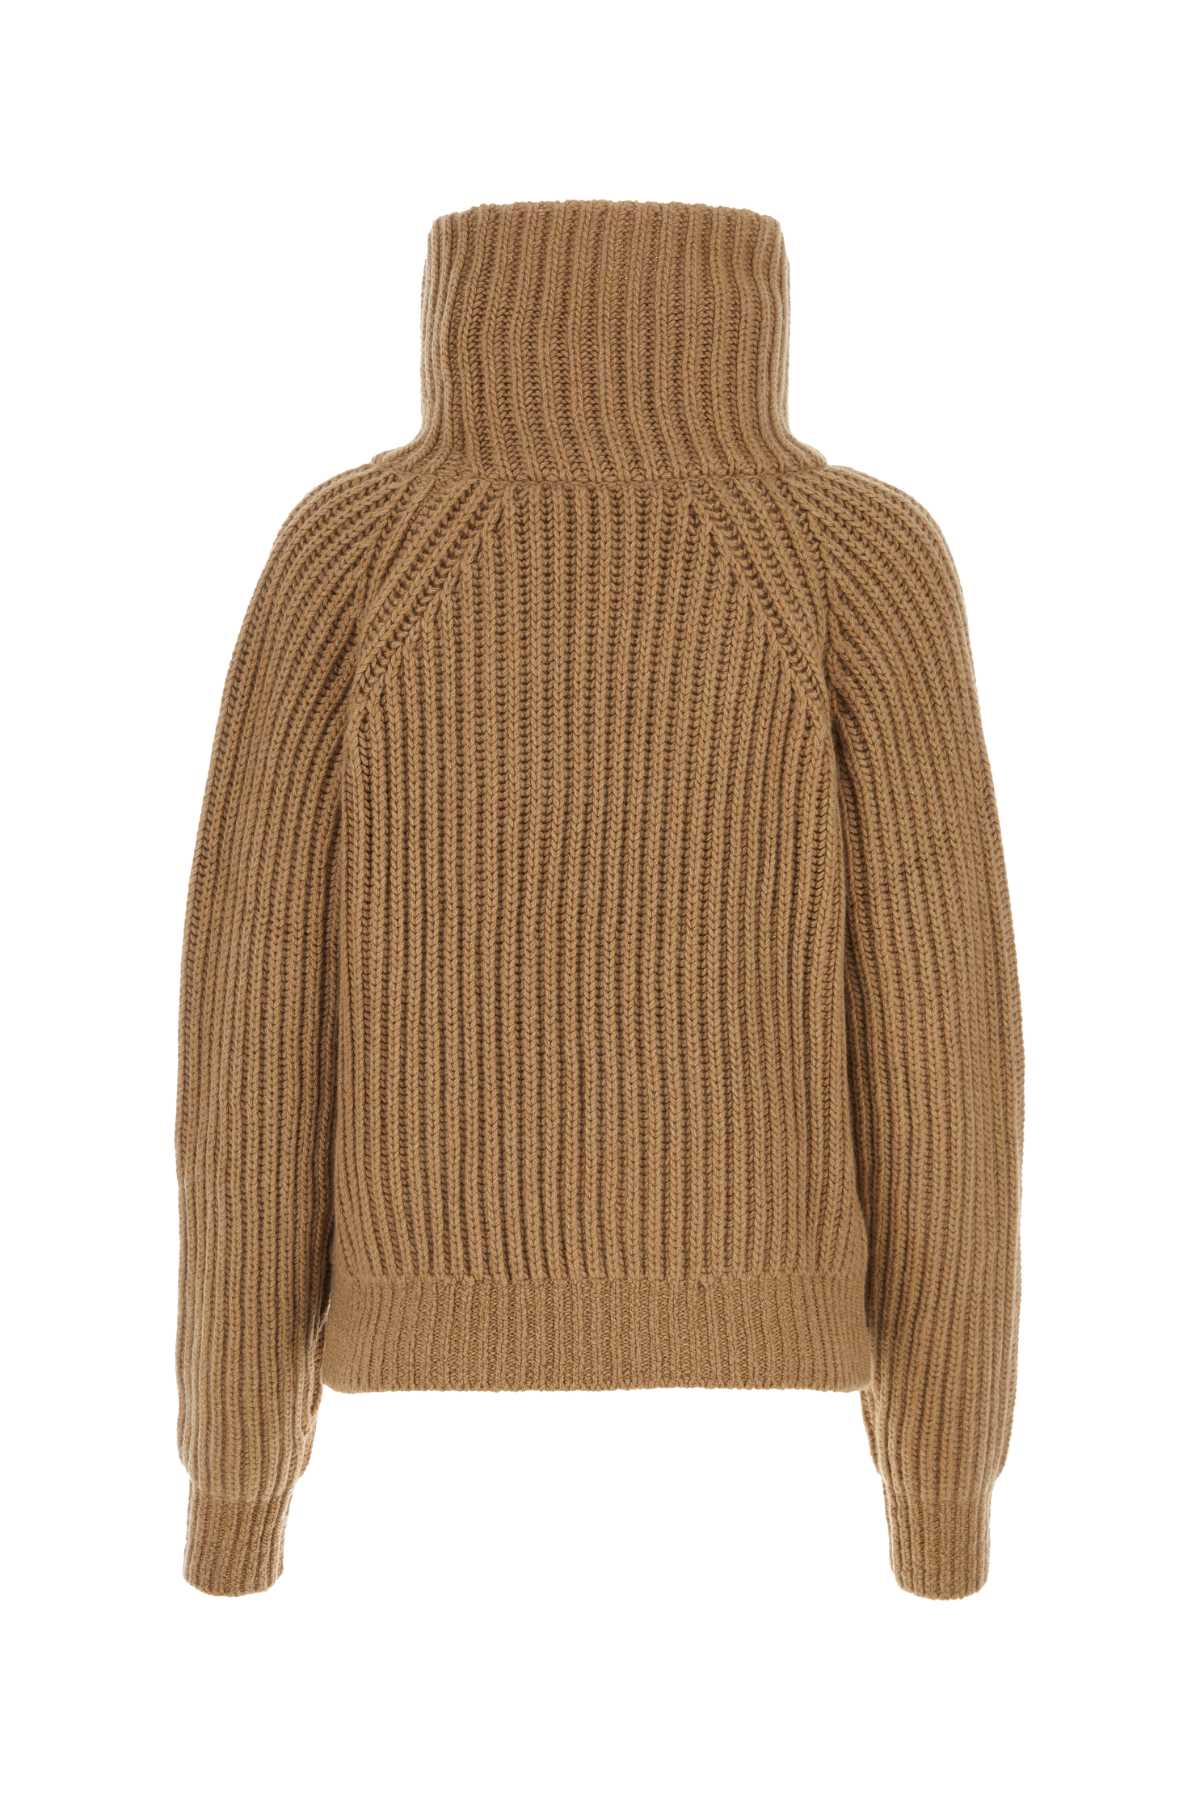 Shop Khaite Camel Cashmere Sweater